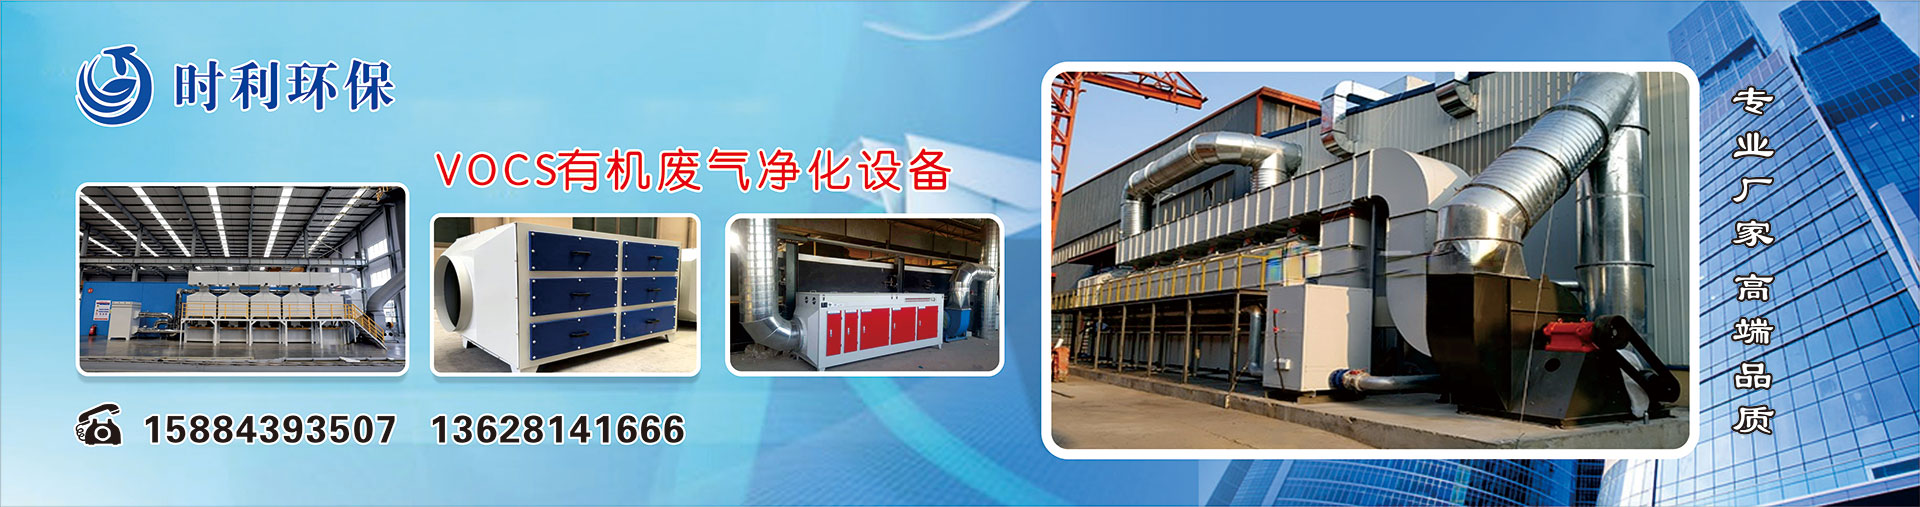 海威科技北京营销中心